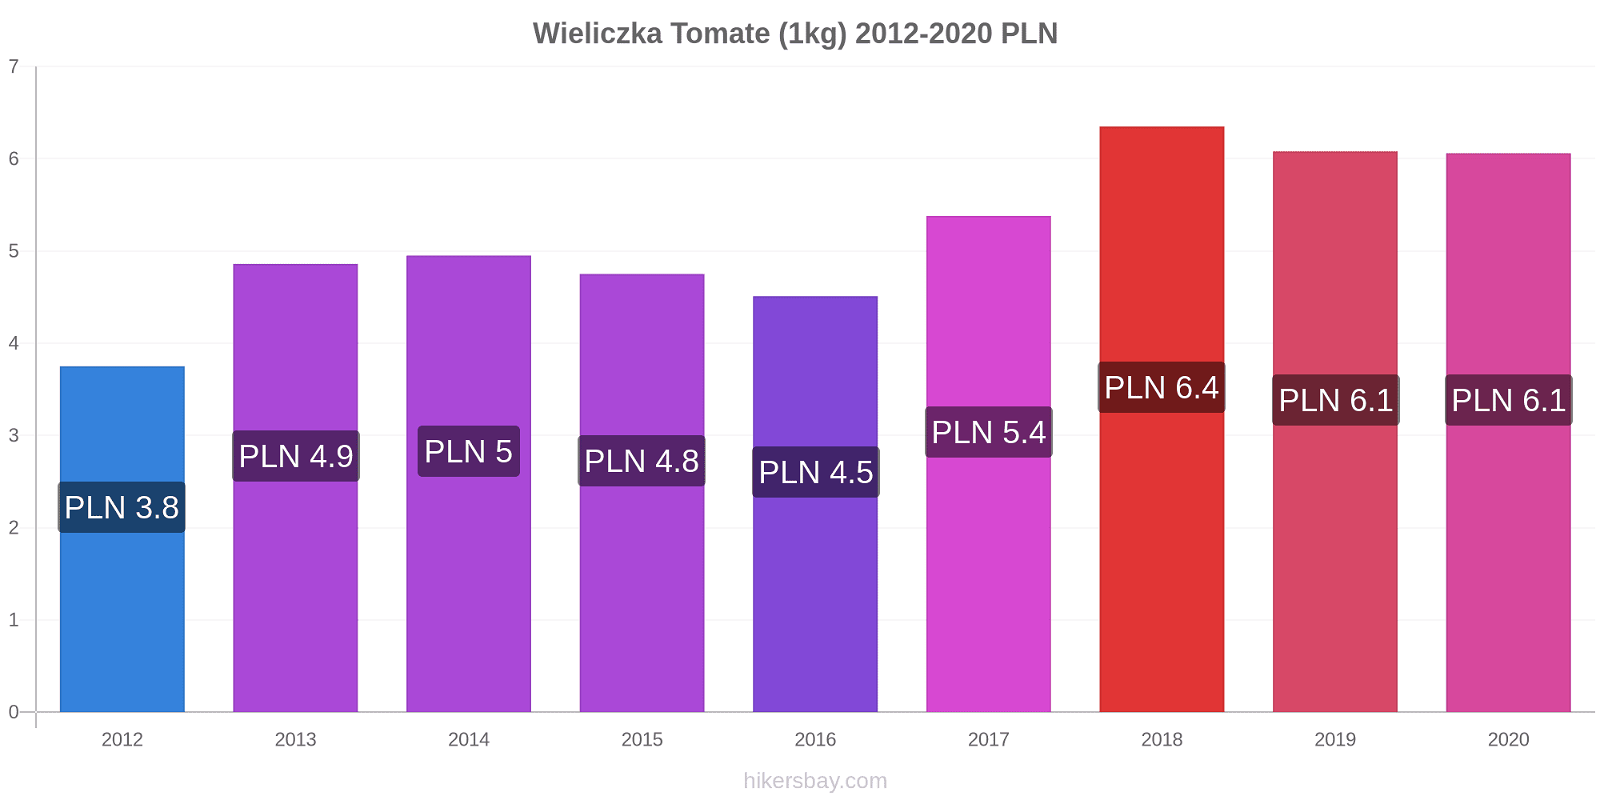 Wieliczka cambios de precios Tomate (1kg) hikersbay.com